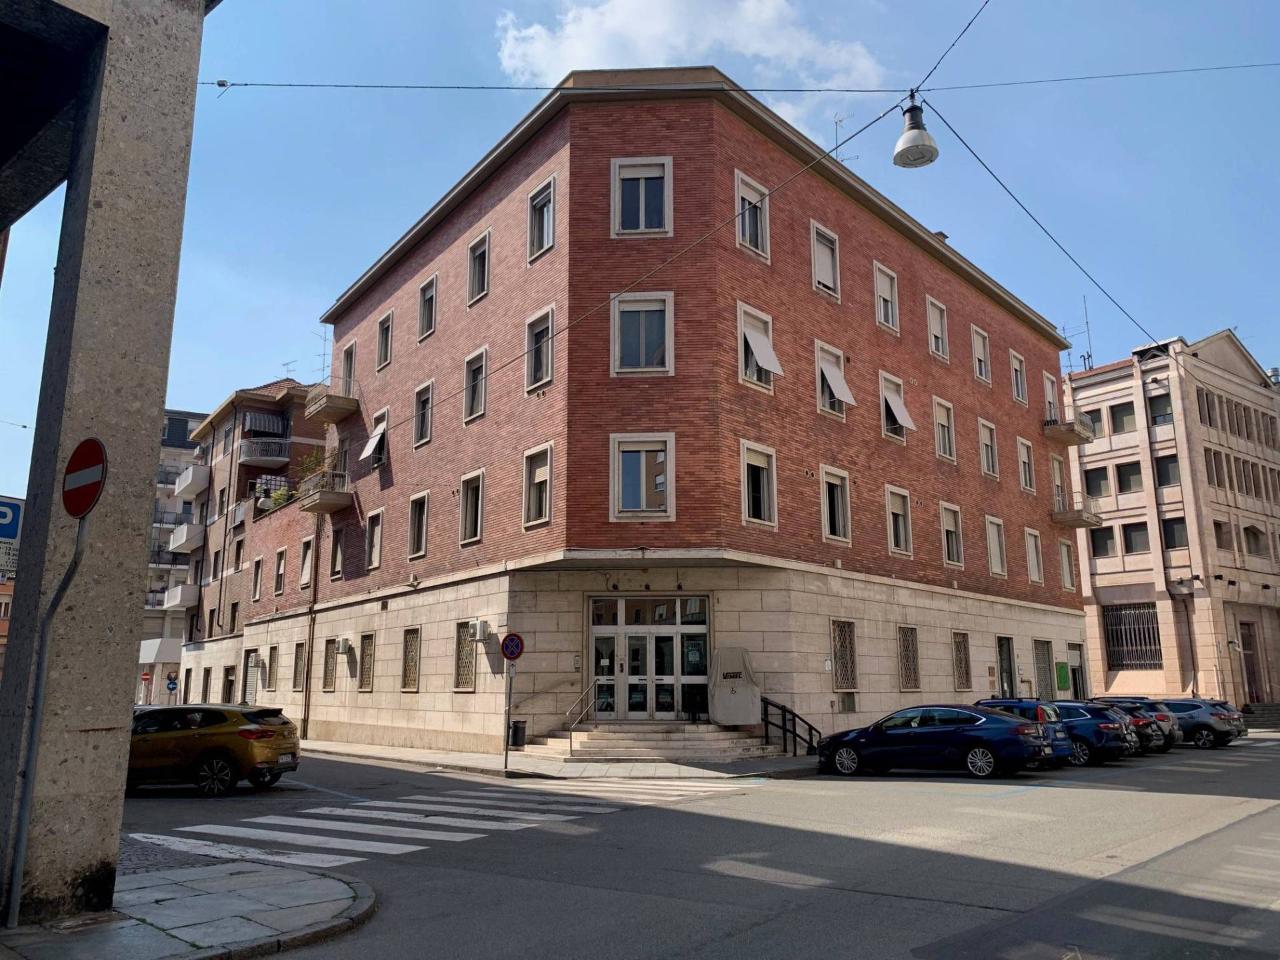 Ufficio condiviso in affitto a Vercelli